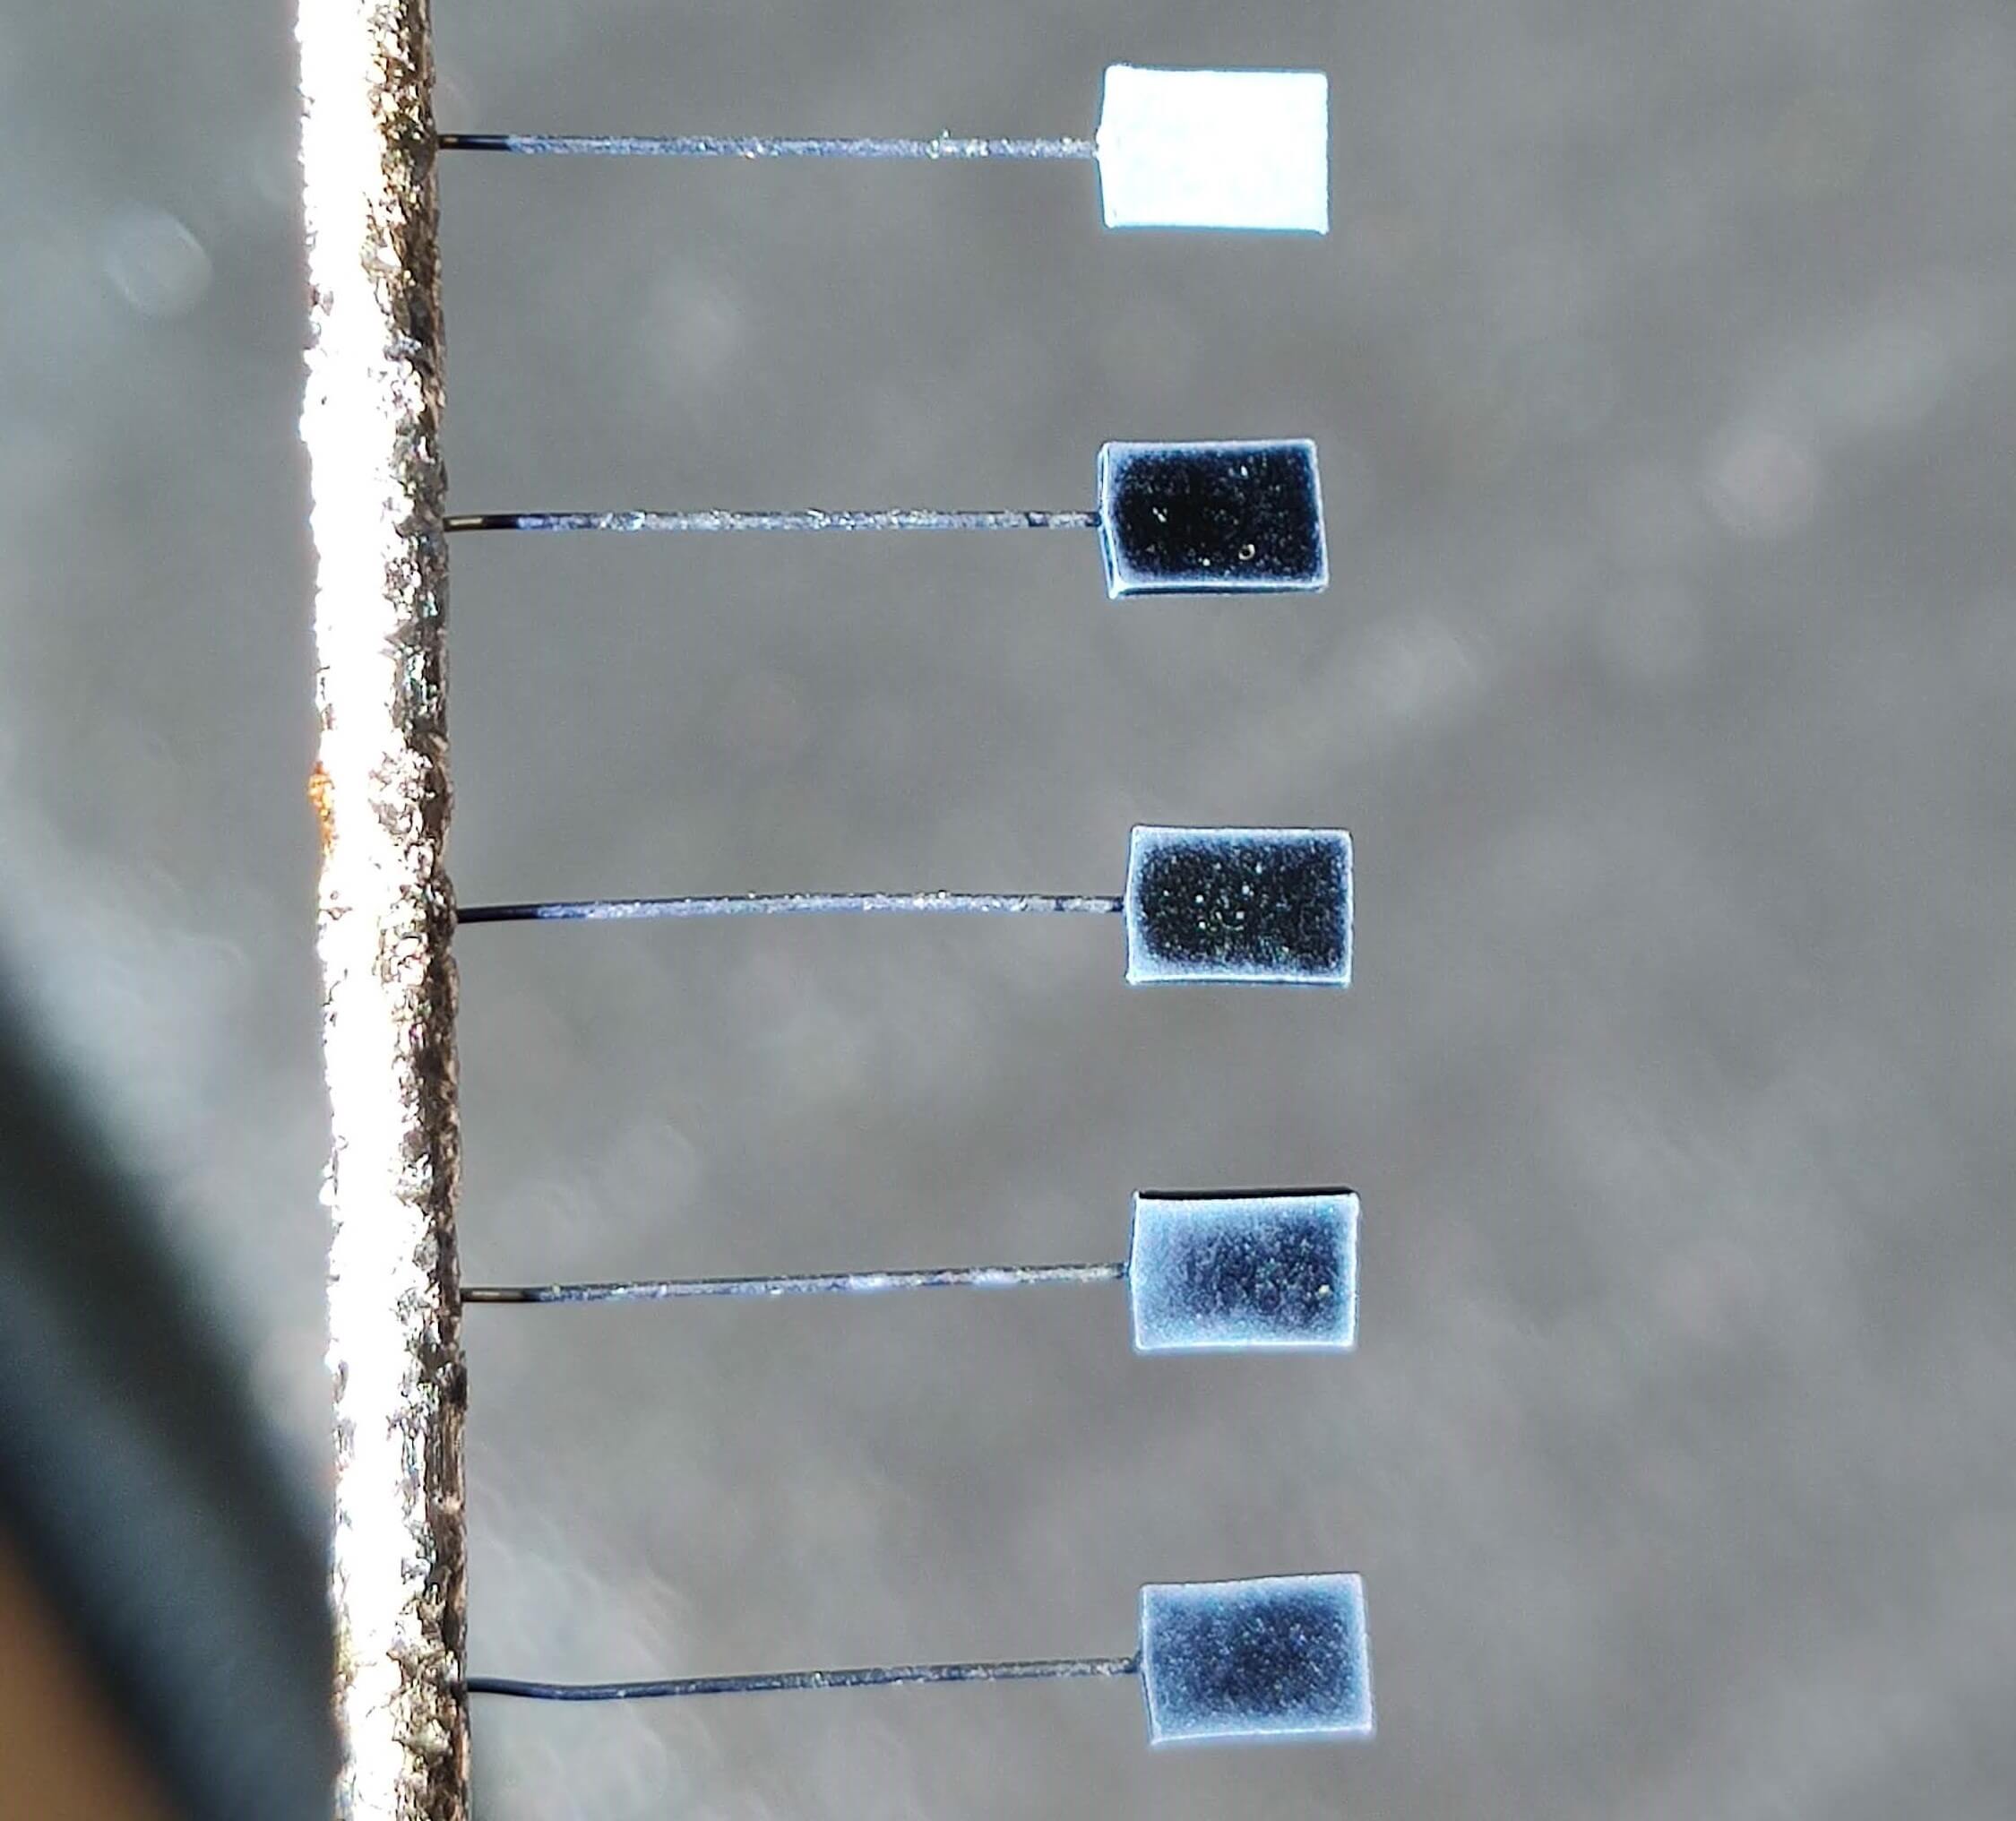 Изображение, демонстрирующее внешний вид незапакованных танталовых конденсаторов с нанесённой плёнкой катодного материала на основе проводящего полимера различной толщины